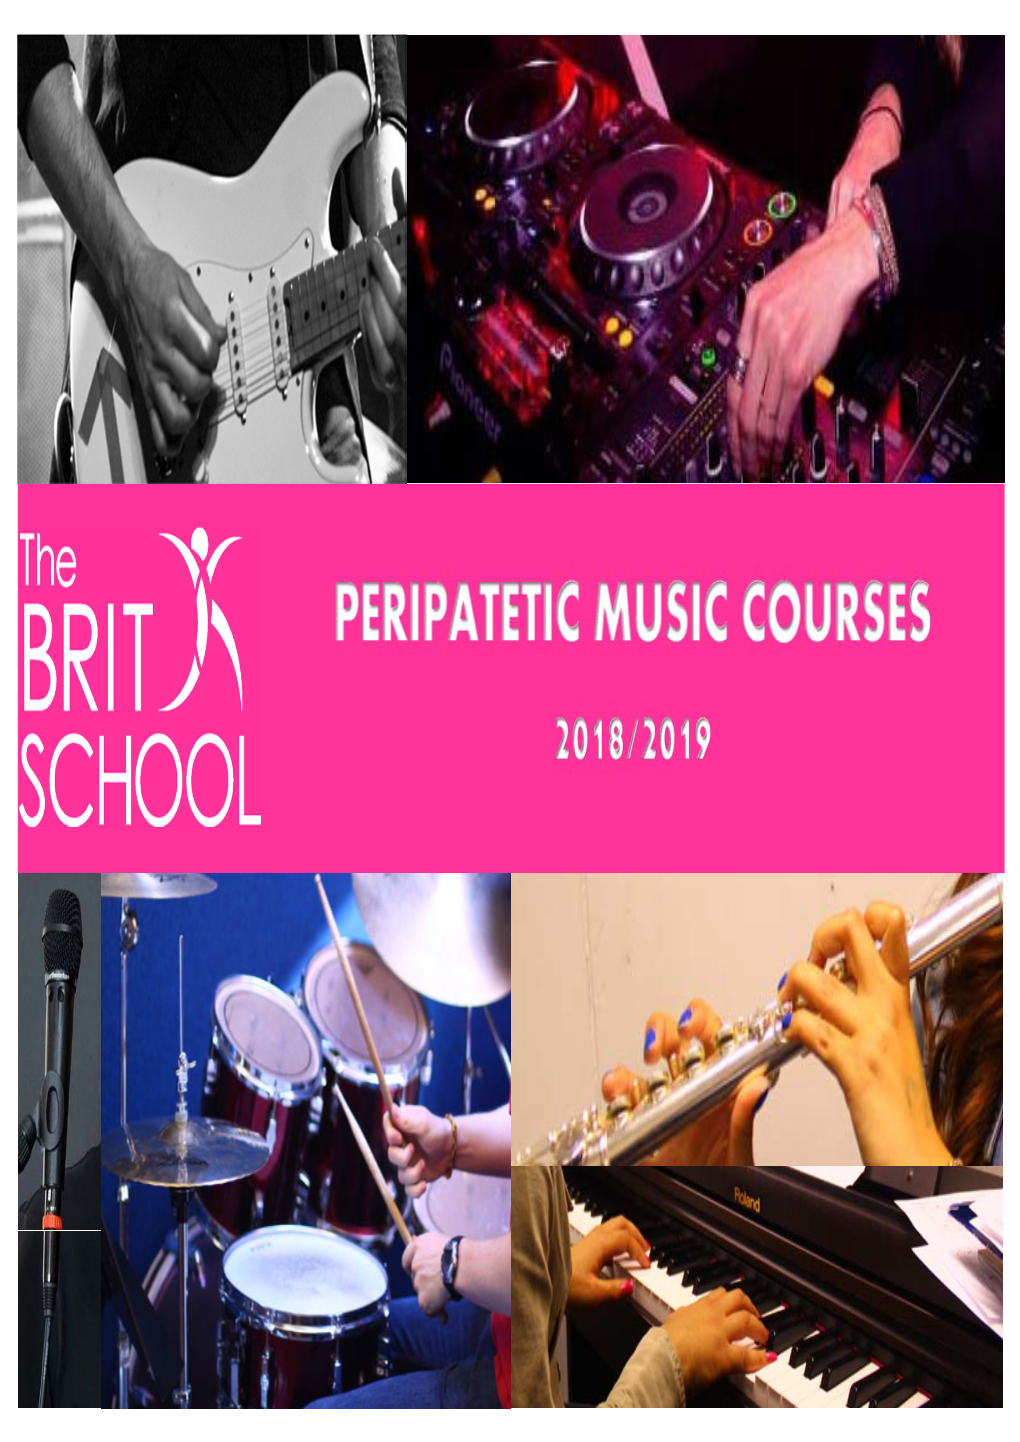 Peripatetic Music Courses 2018/2019